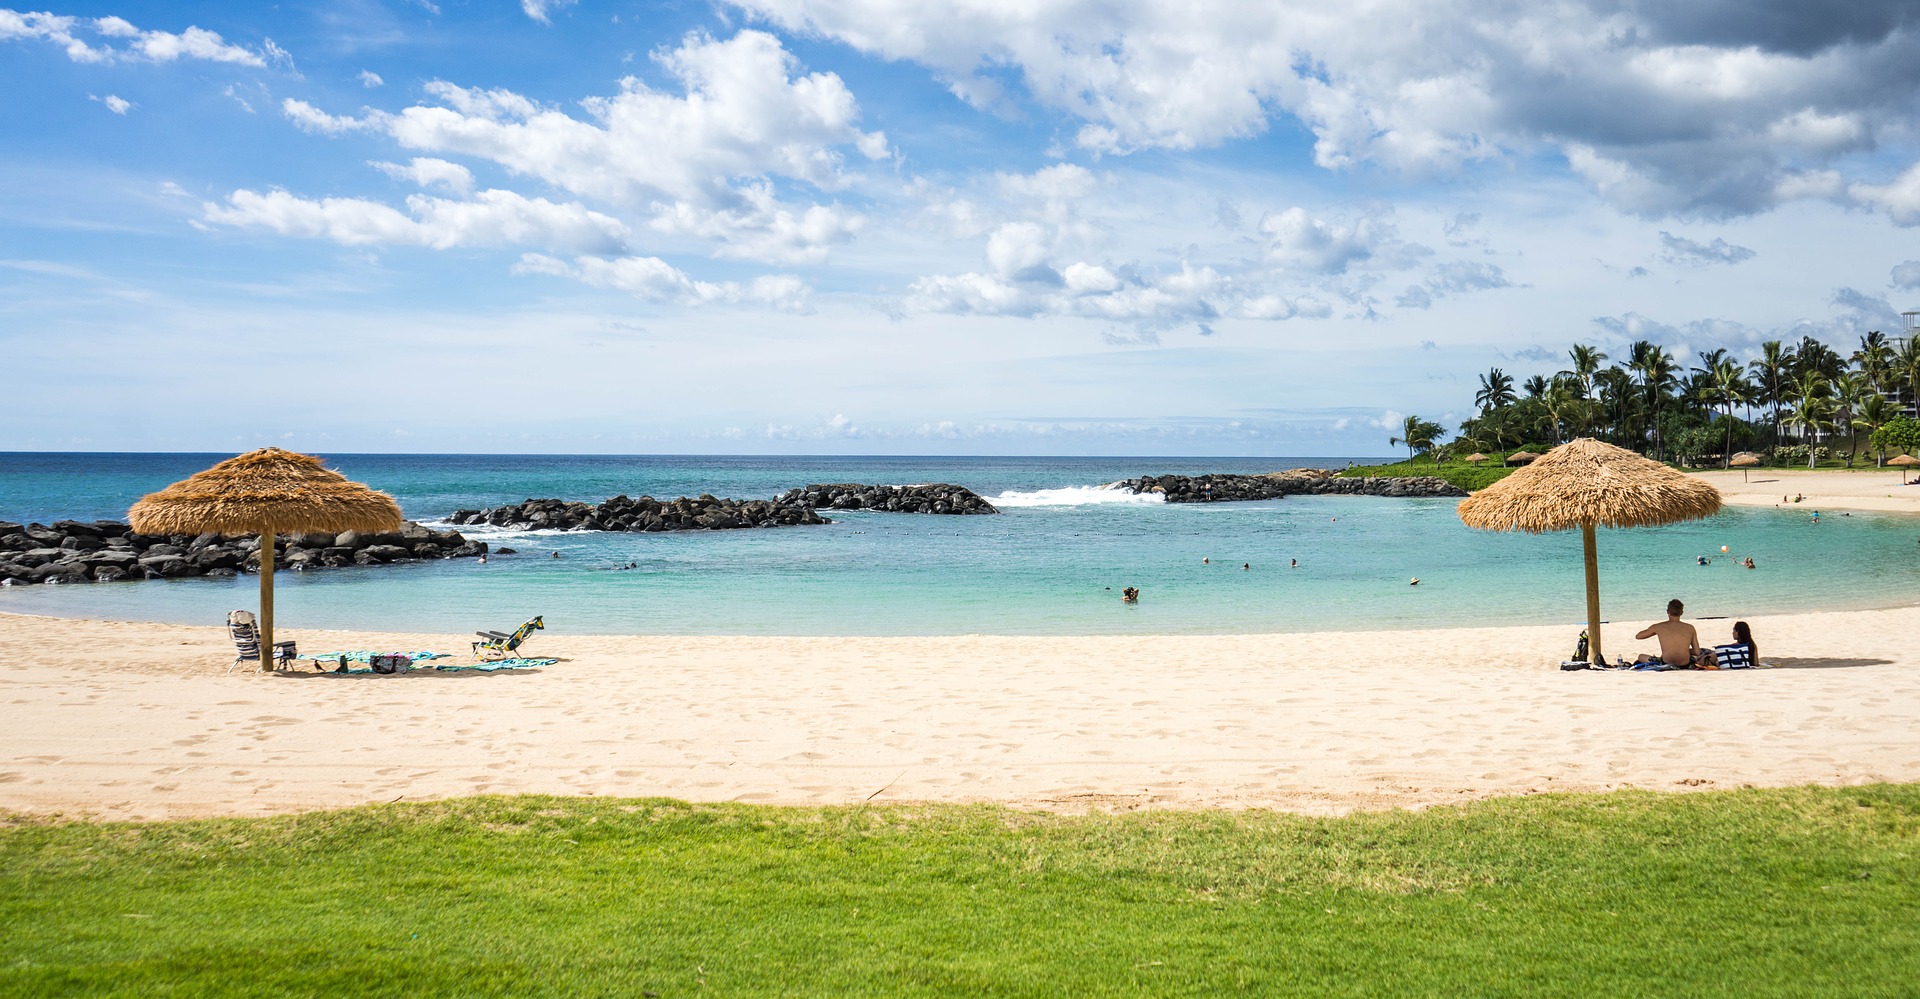 VRBO Rentals in Hawaii